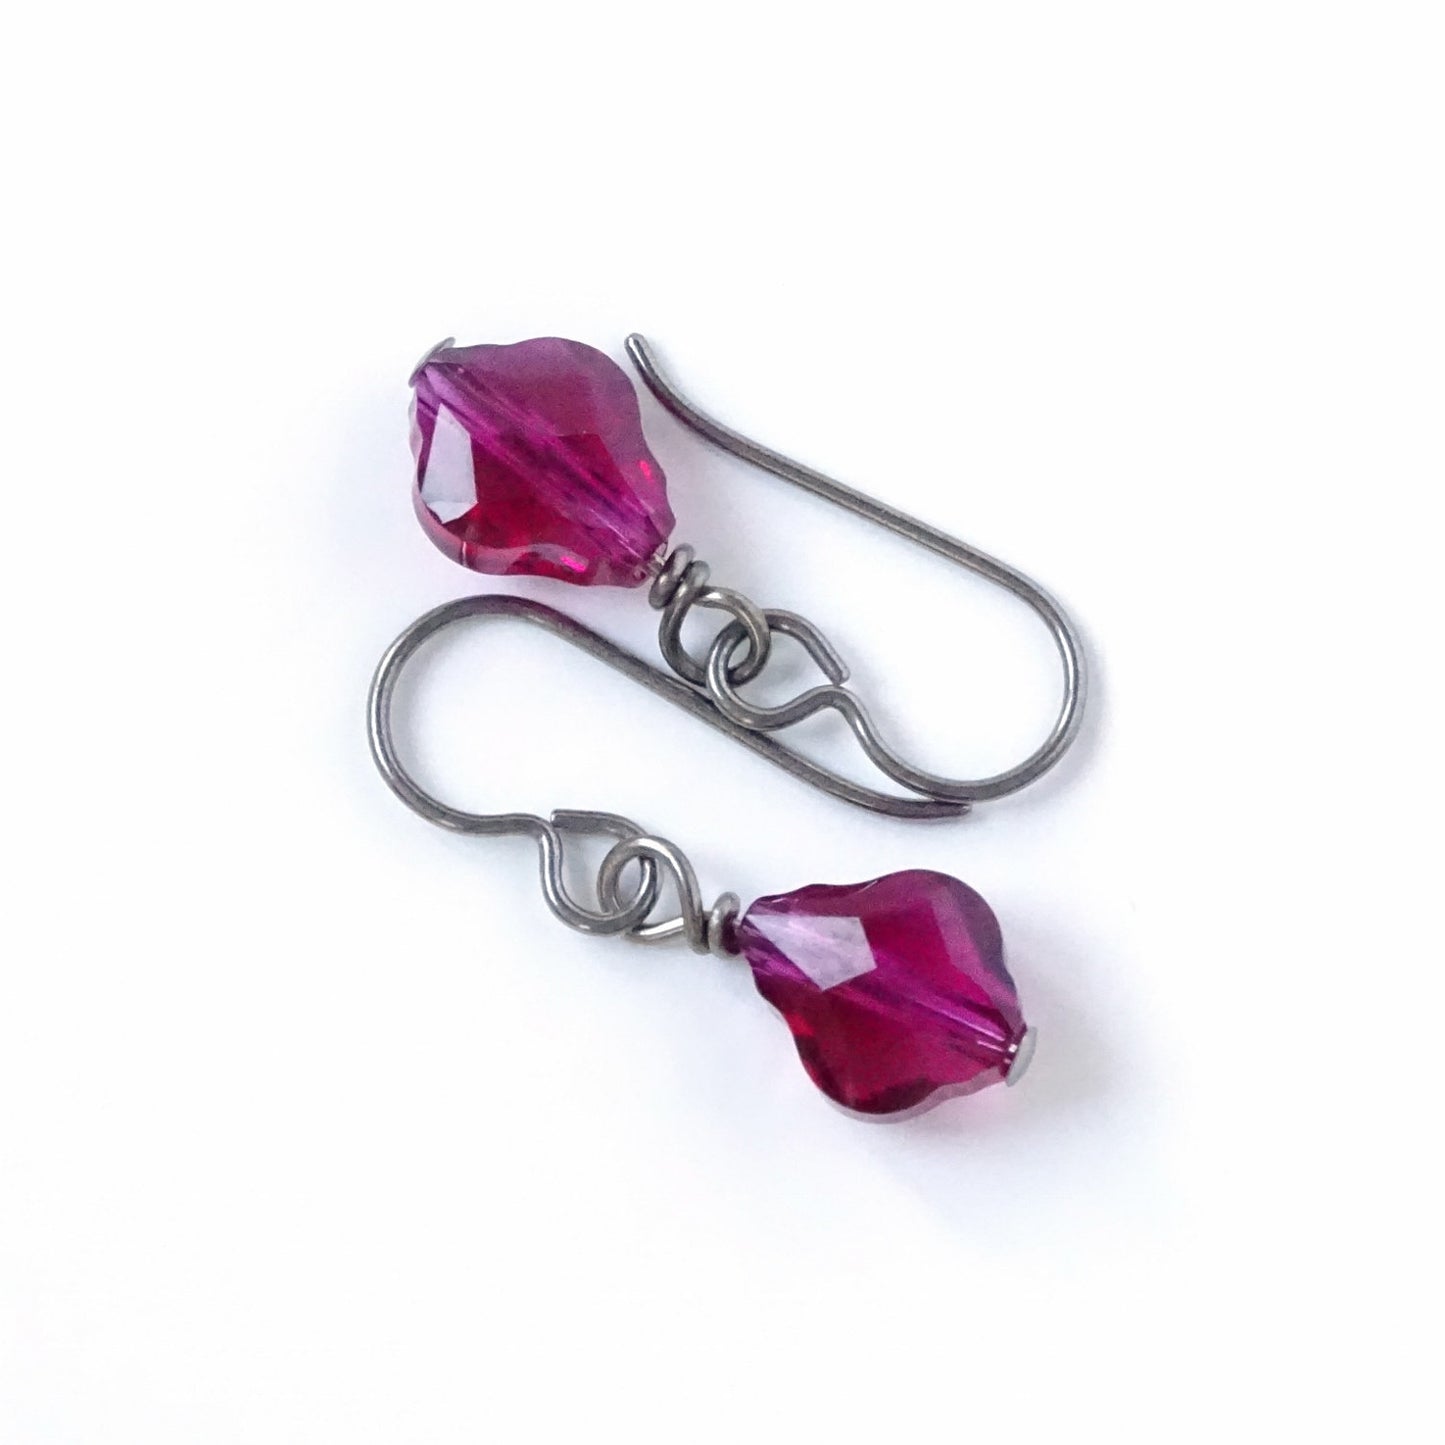 Ruby Baroque Crystal Titanium Earrings, Ruby Red Pink Swarovski Crystal, Hypoallergenic Nickel Free Niobium Earrings for Sensitive Ears